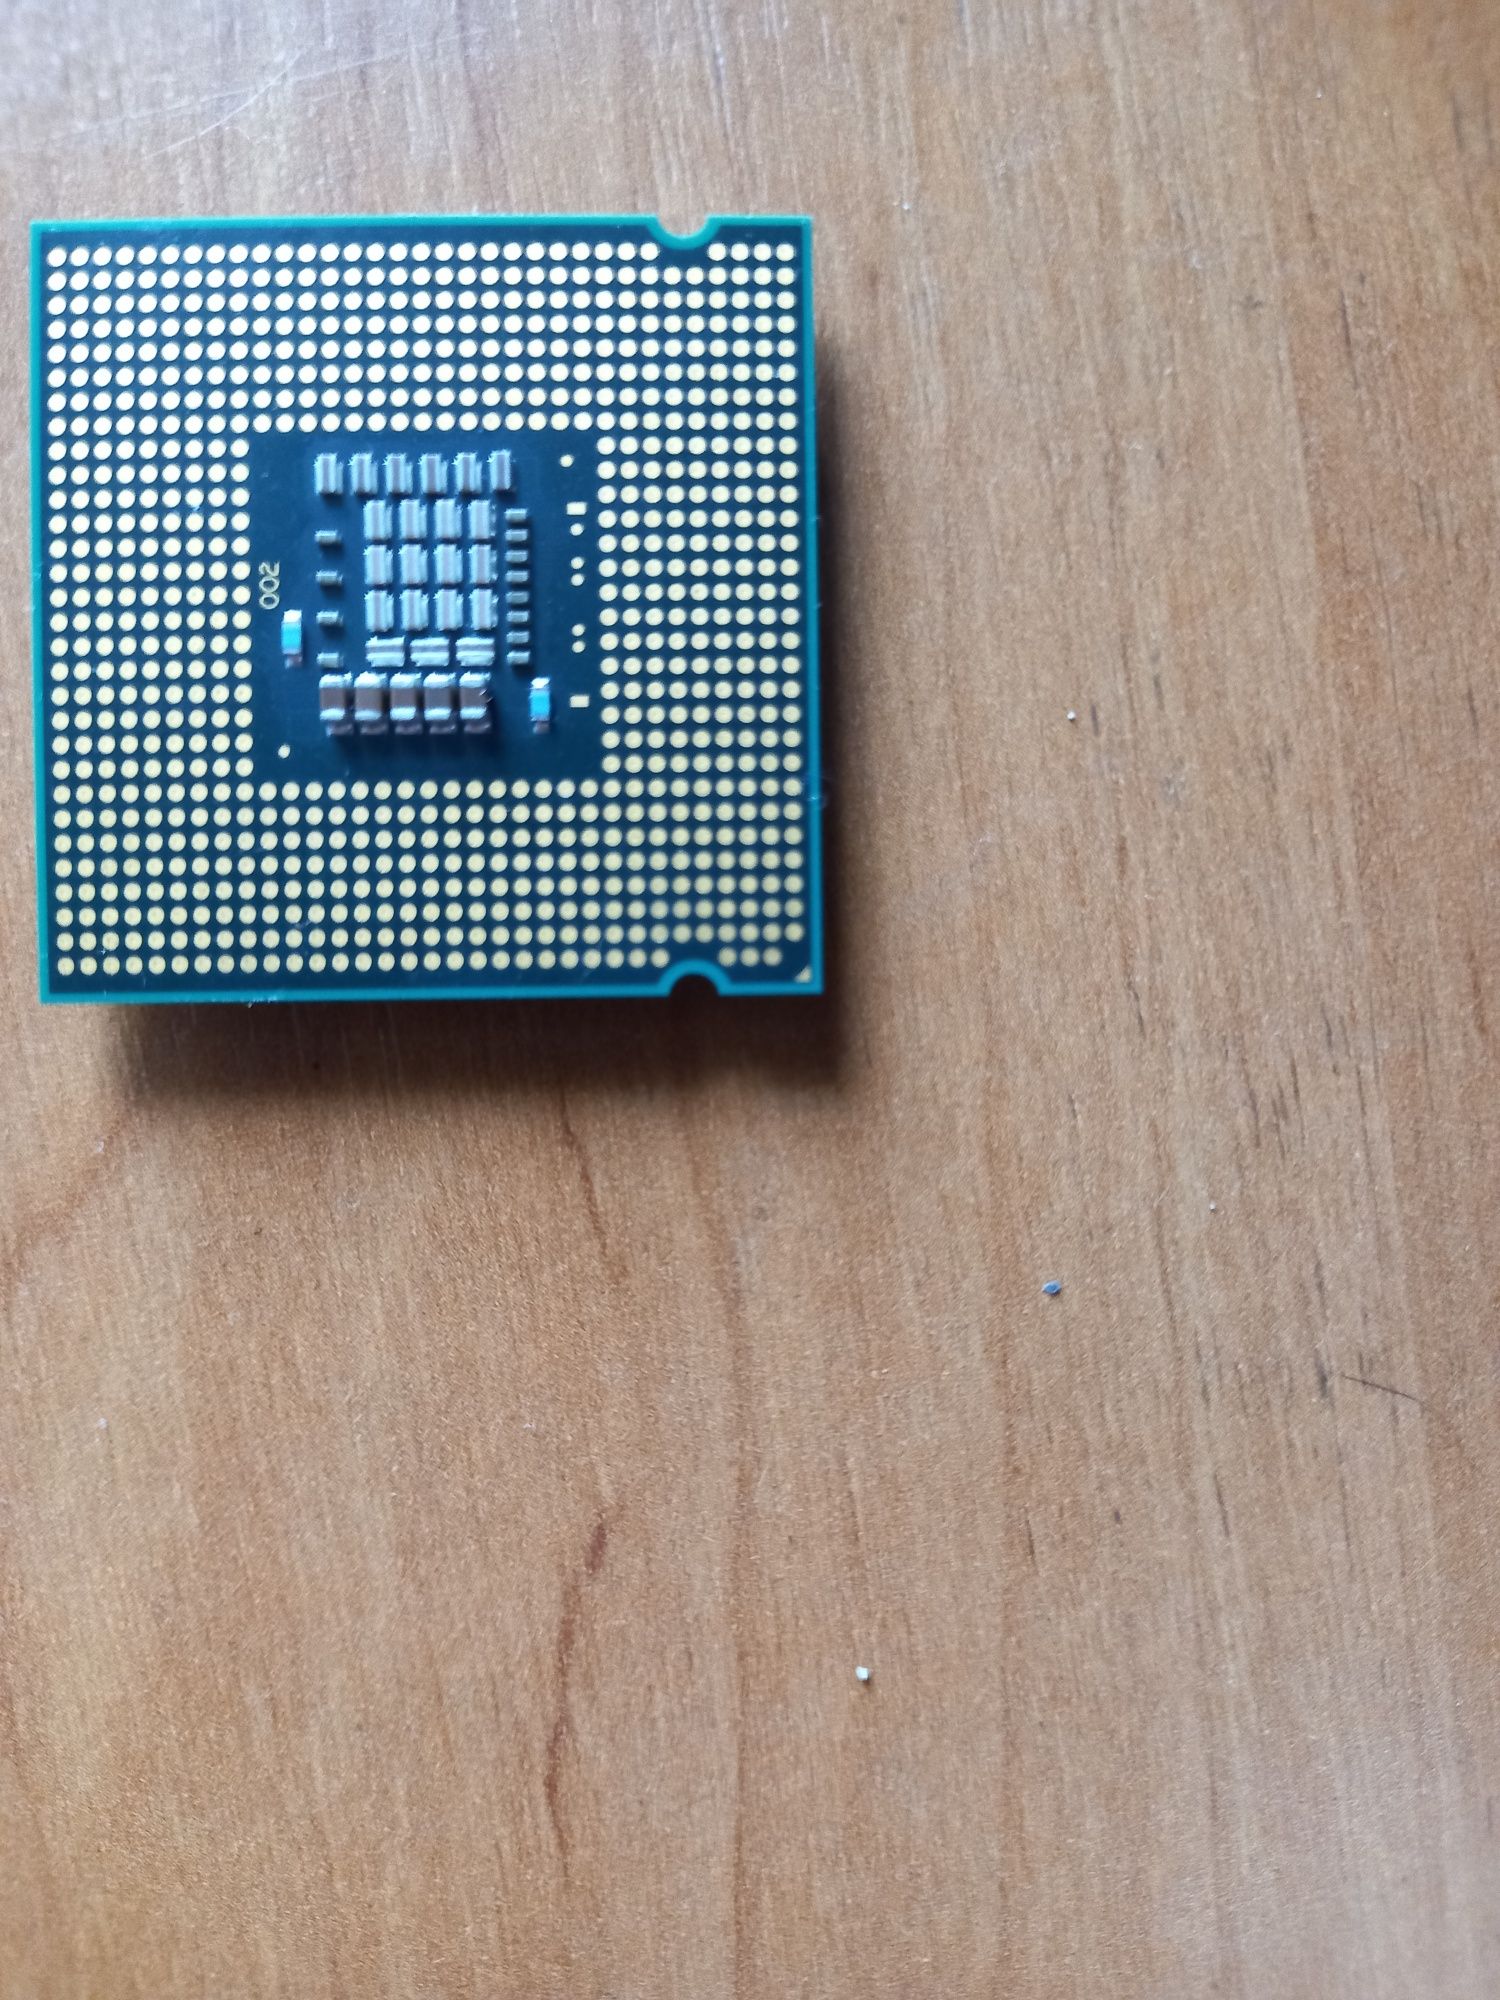 Продам процессор intel core e8400